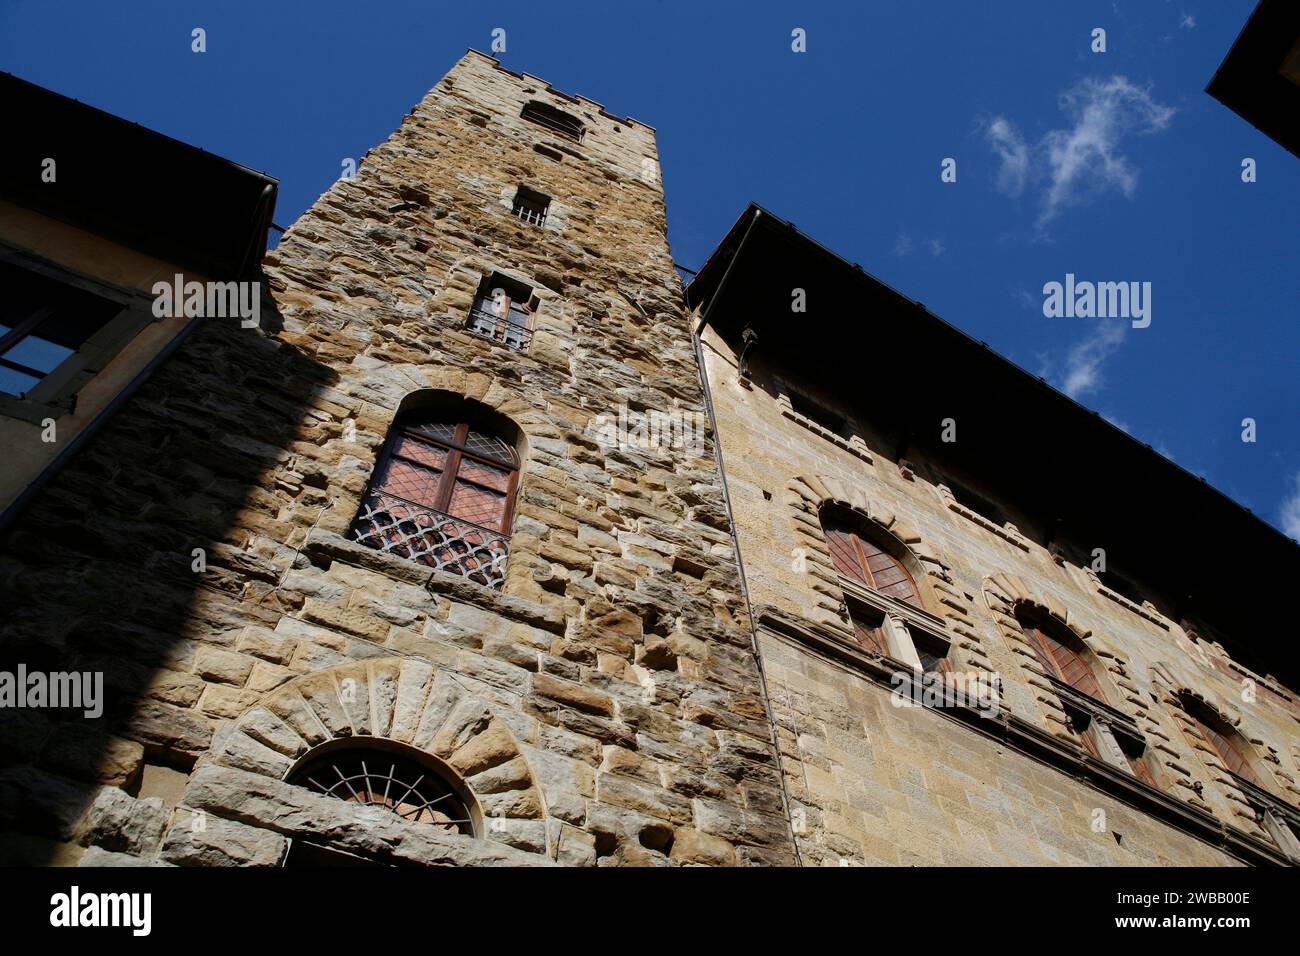 Italy Tuscany Arezzo  - Tower-house in Corso italia Stock Photo